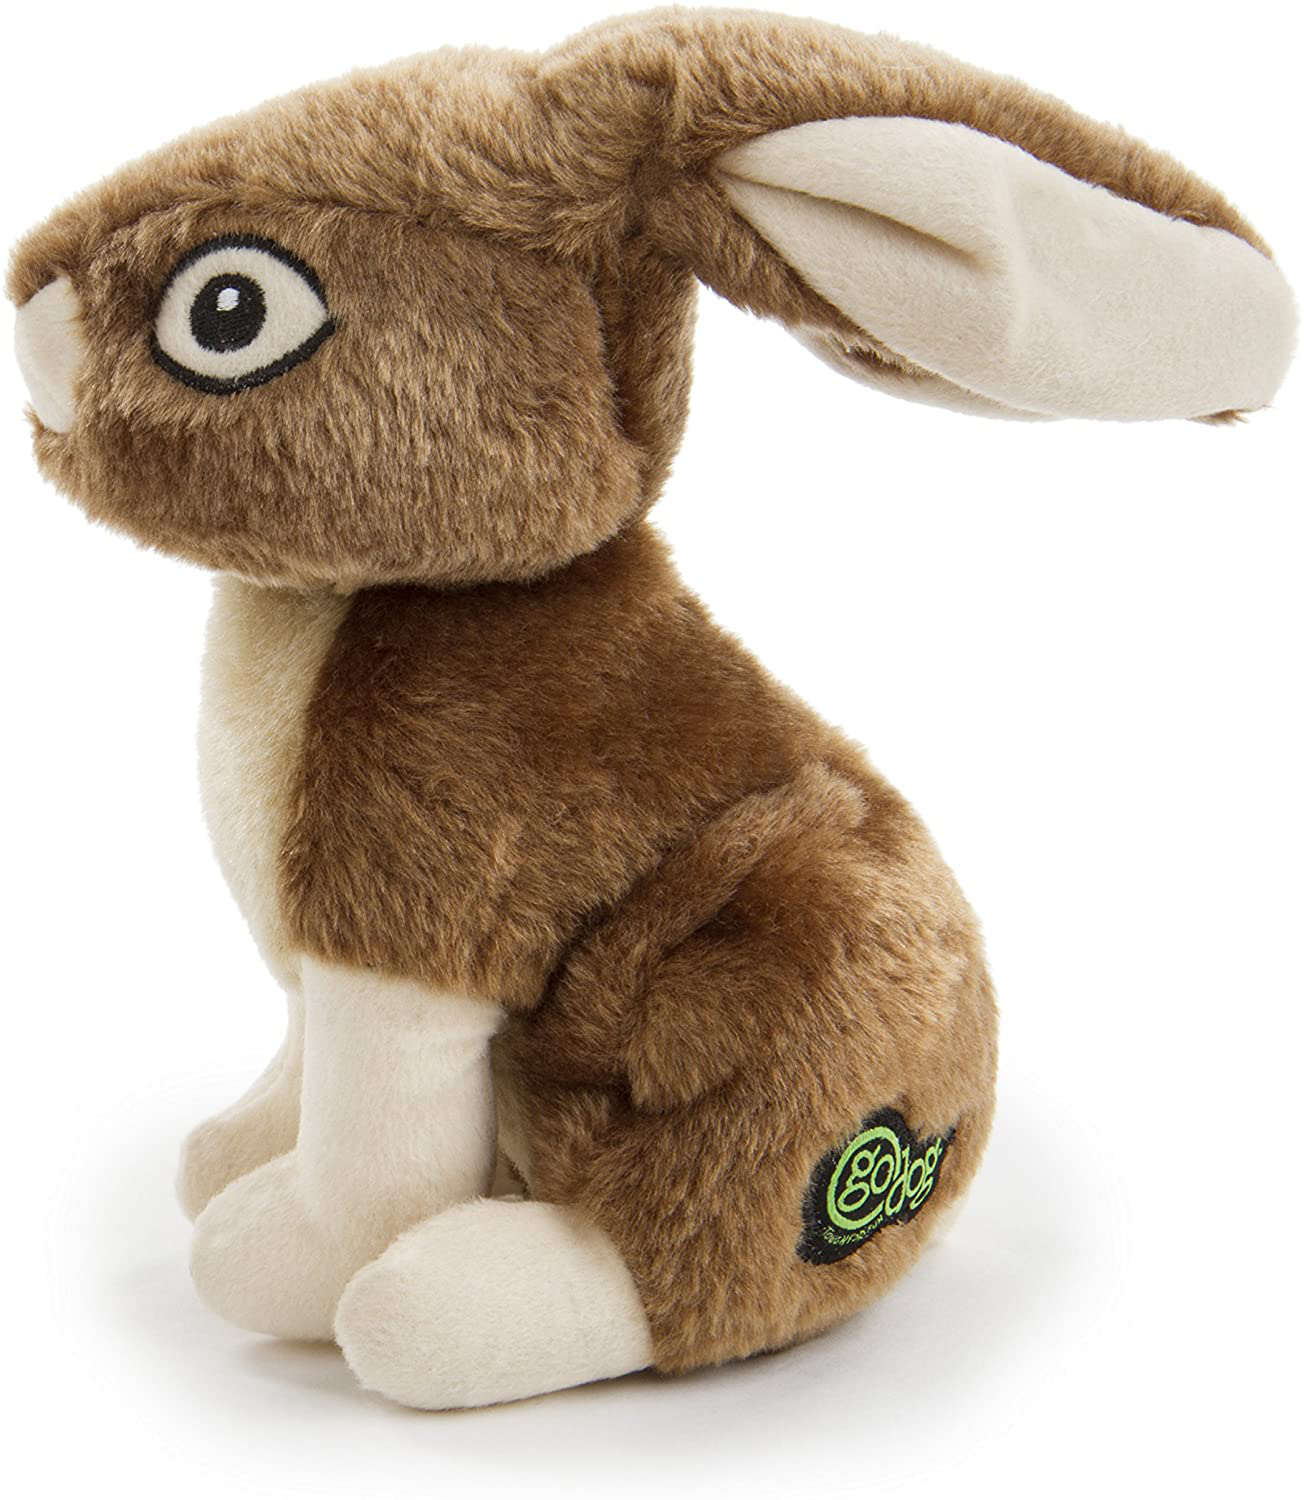 Godog Wildlife Rabbit Large Toy with Chew Guard Animals & Pet Supplies > Pet Supplies > Dog Supplies > Dog Toys goDog   